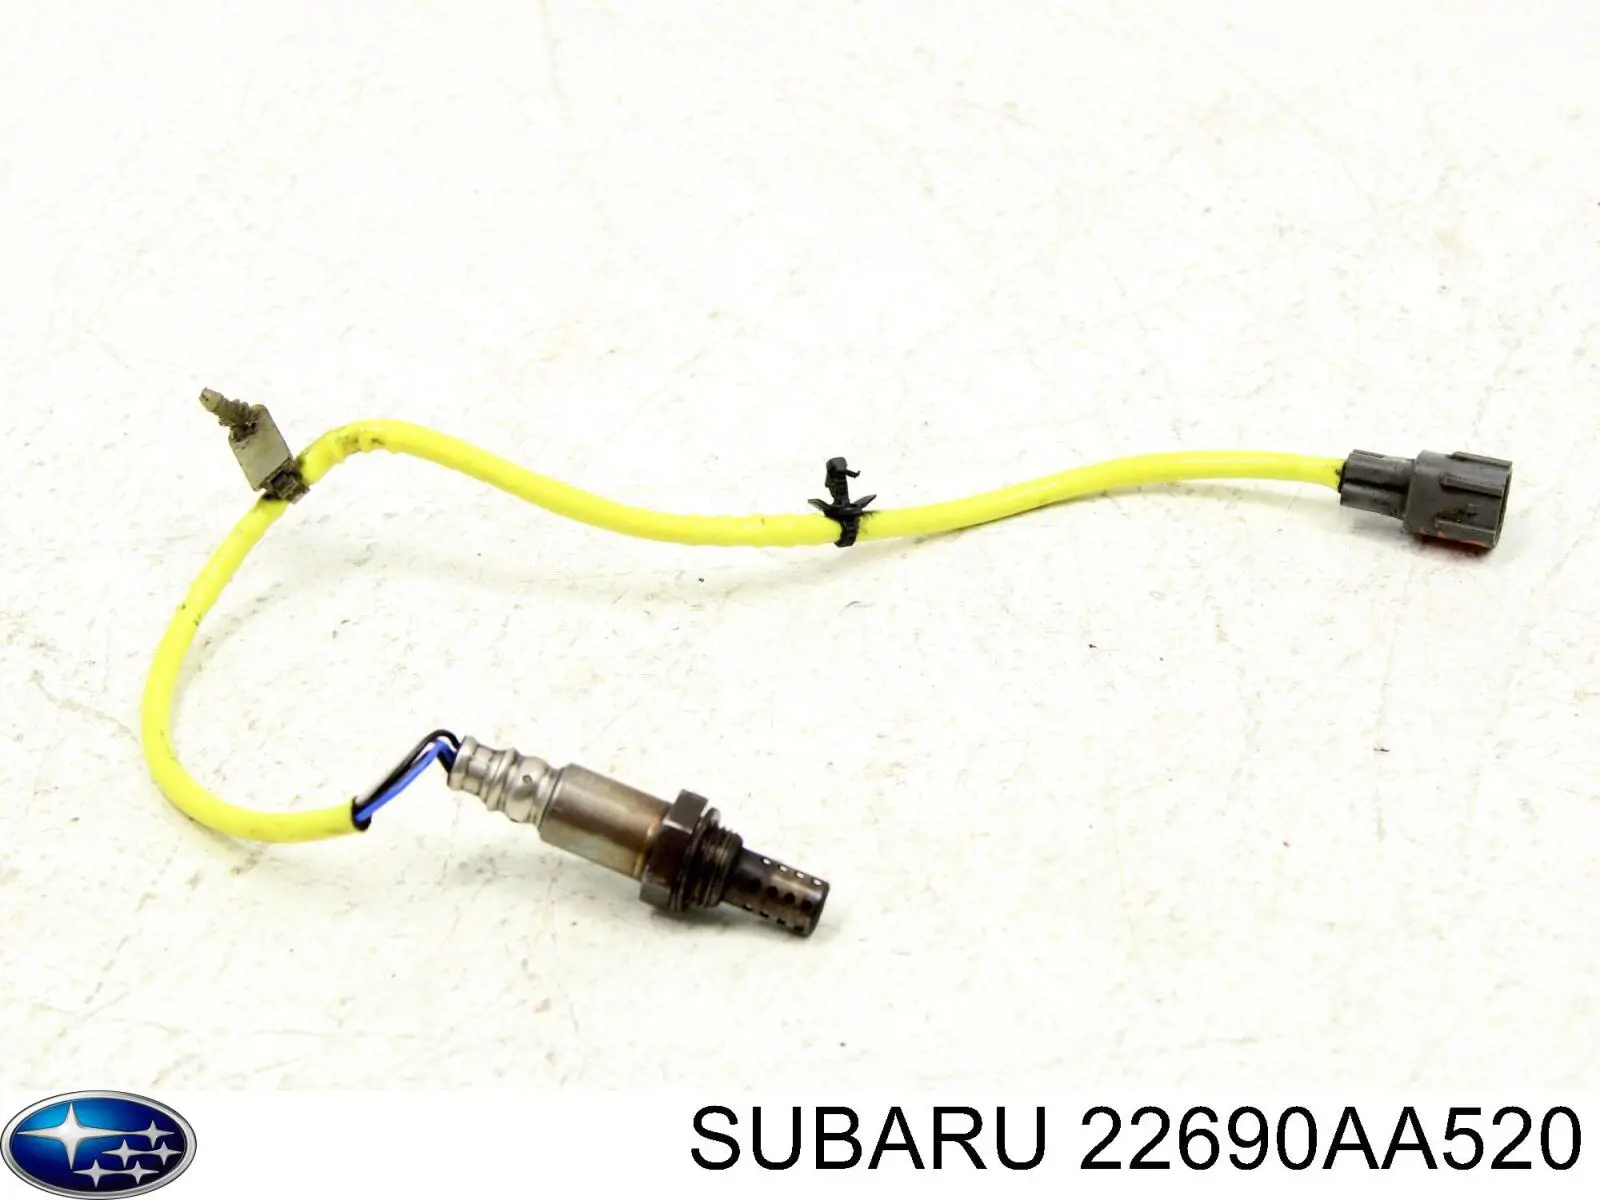 22690AA520 Subaru sonda lambda